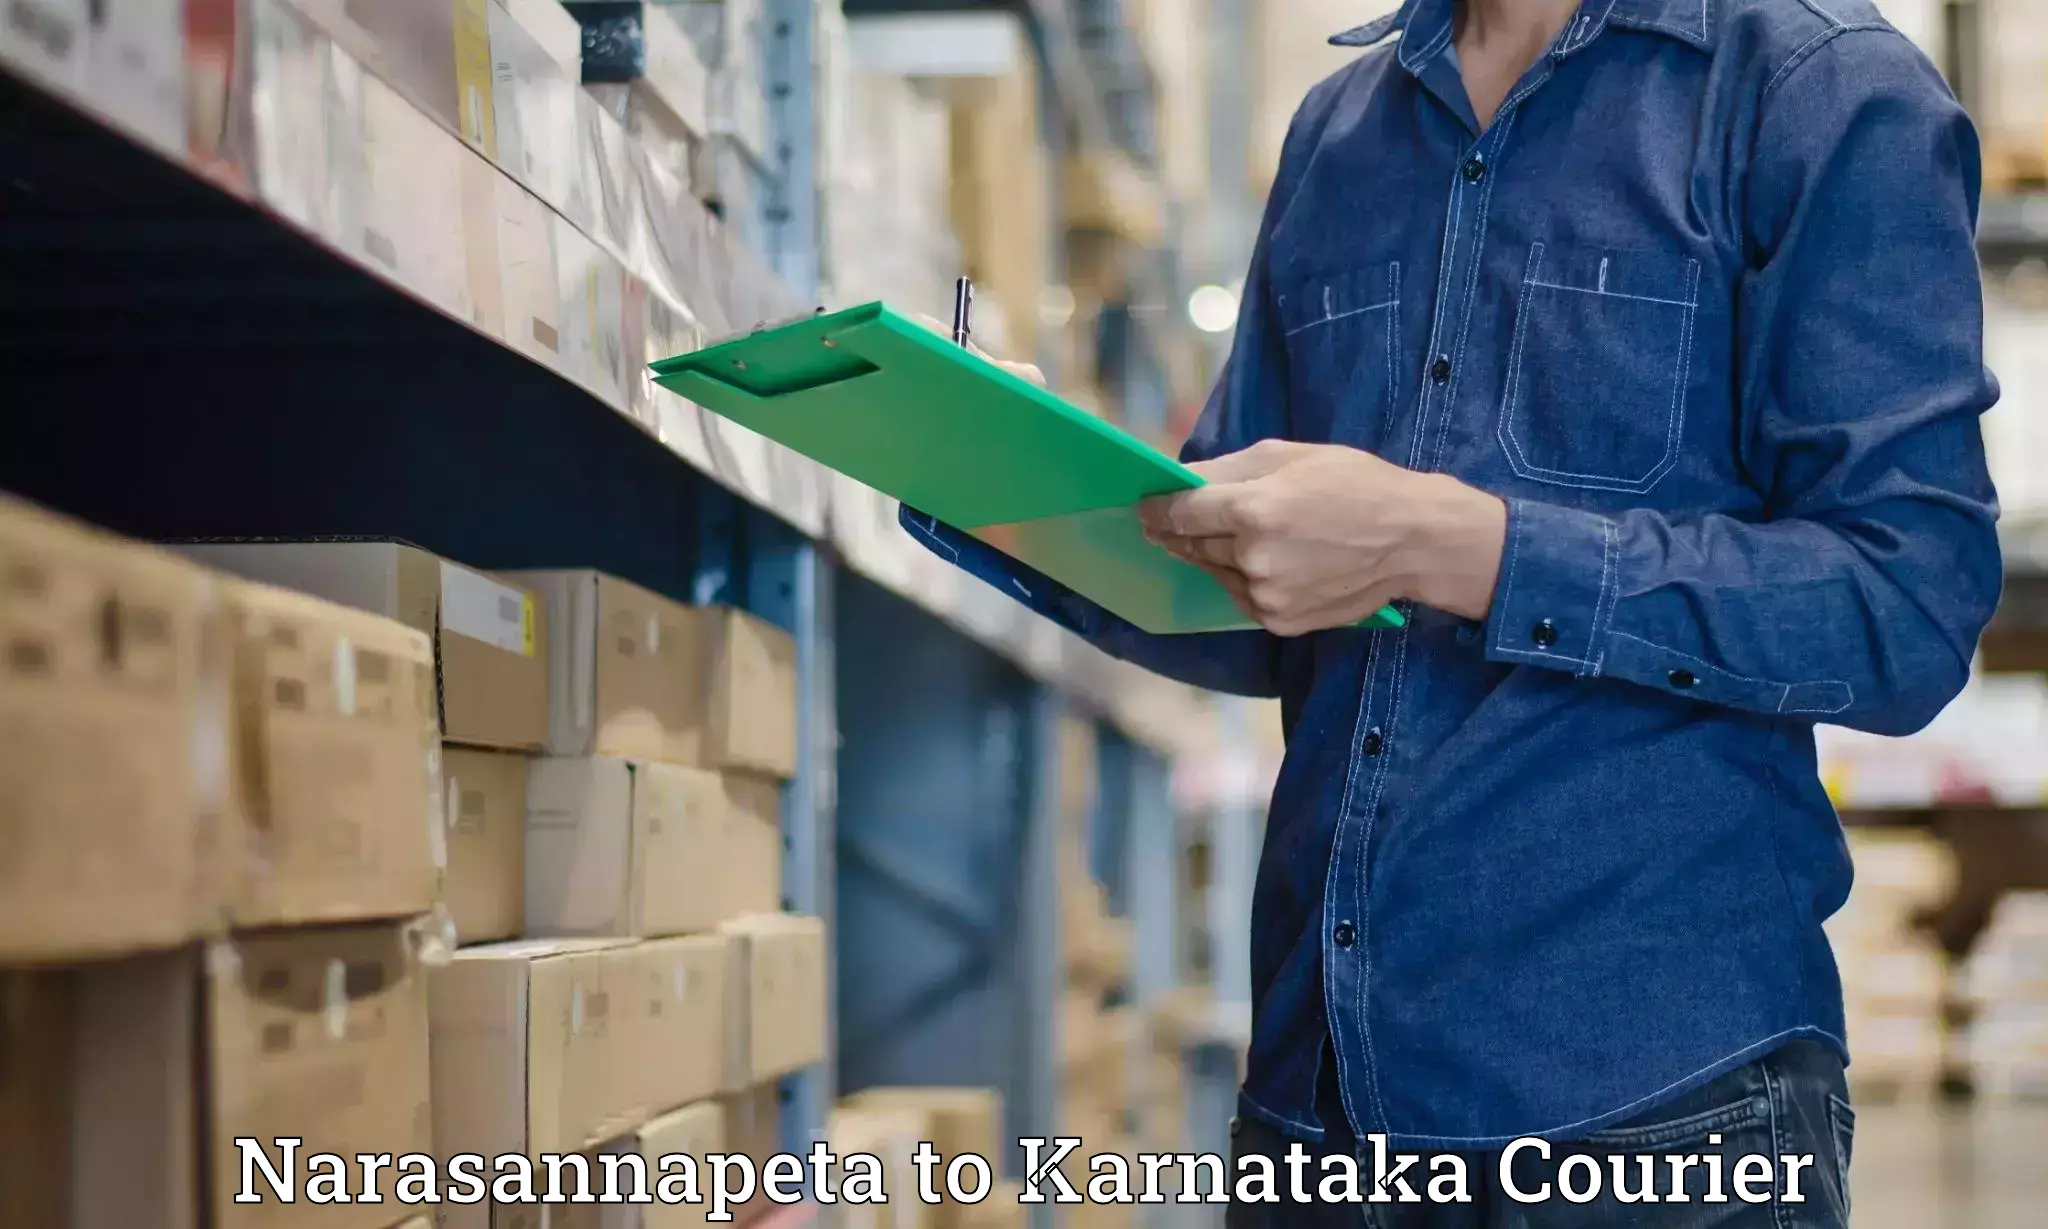 Express delivery capabilities Narasannapeta to Karnataka